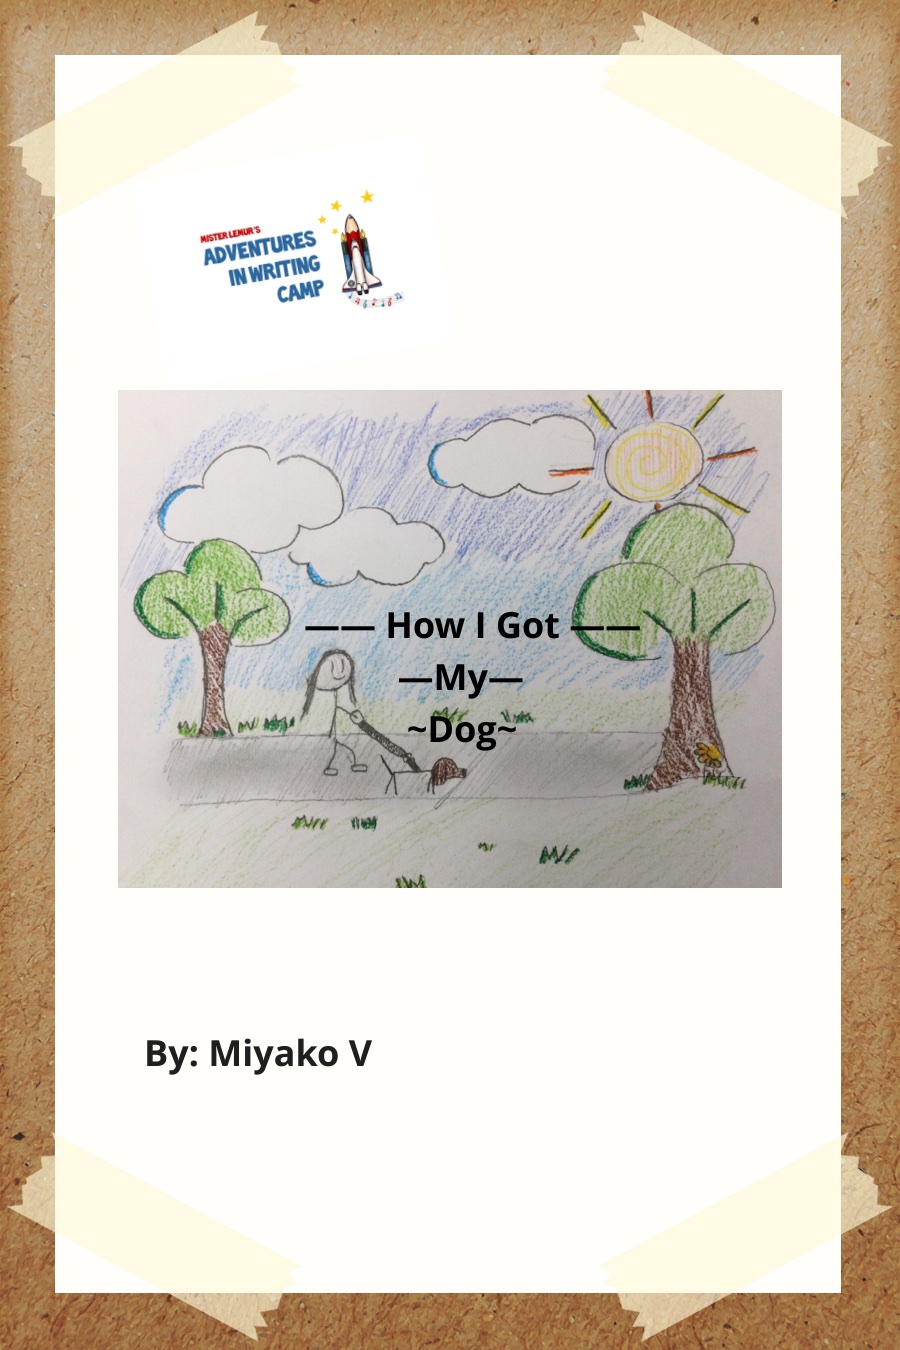 How I Got My Dog by Miyako V